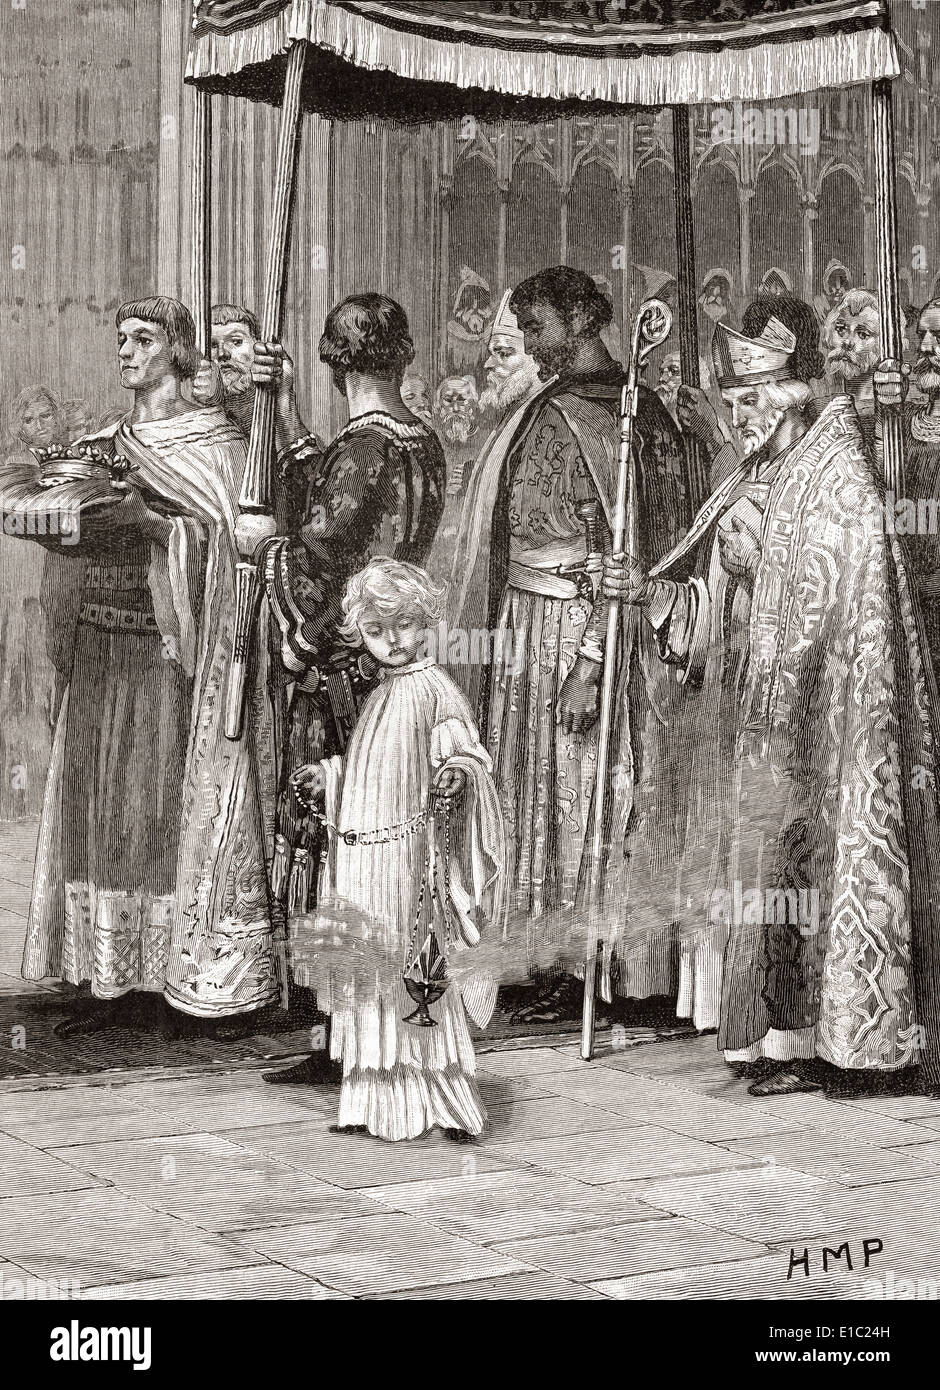 Krönung von König Richard i. im Jahre 1189 in der Westminster Abbey, London, England. Stockfoto